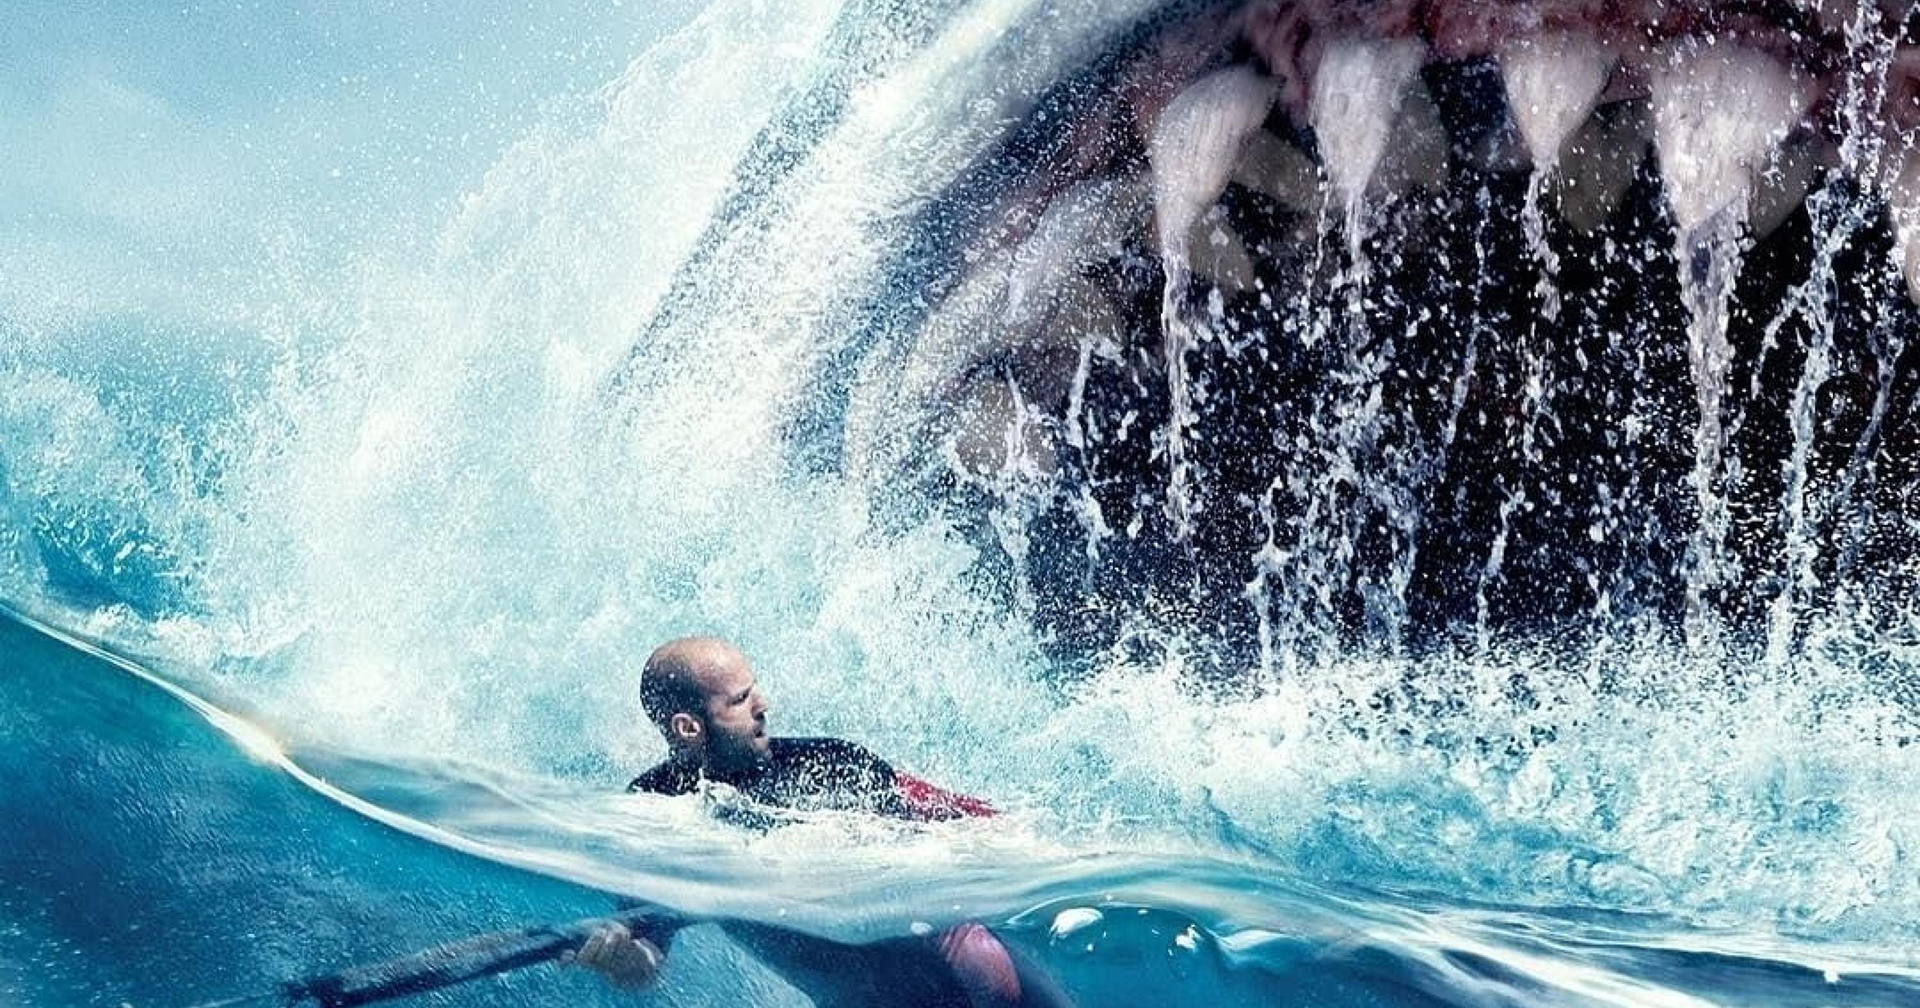 ฉลามยักษ์ล้านปีกลับมาแล้ว! เริ่มถ่ายทำที่อังกฤษ ในชื่อ ‘Meg 2: The Trench’